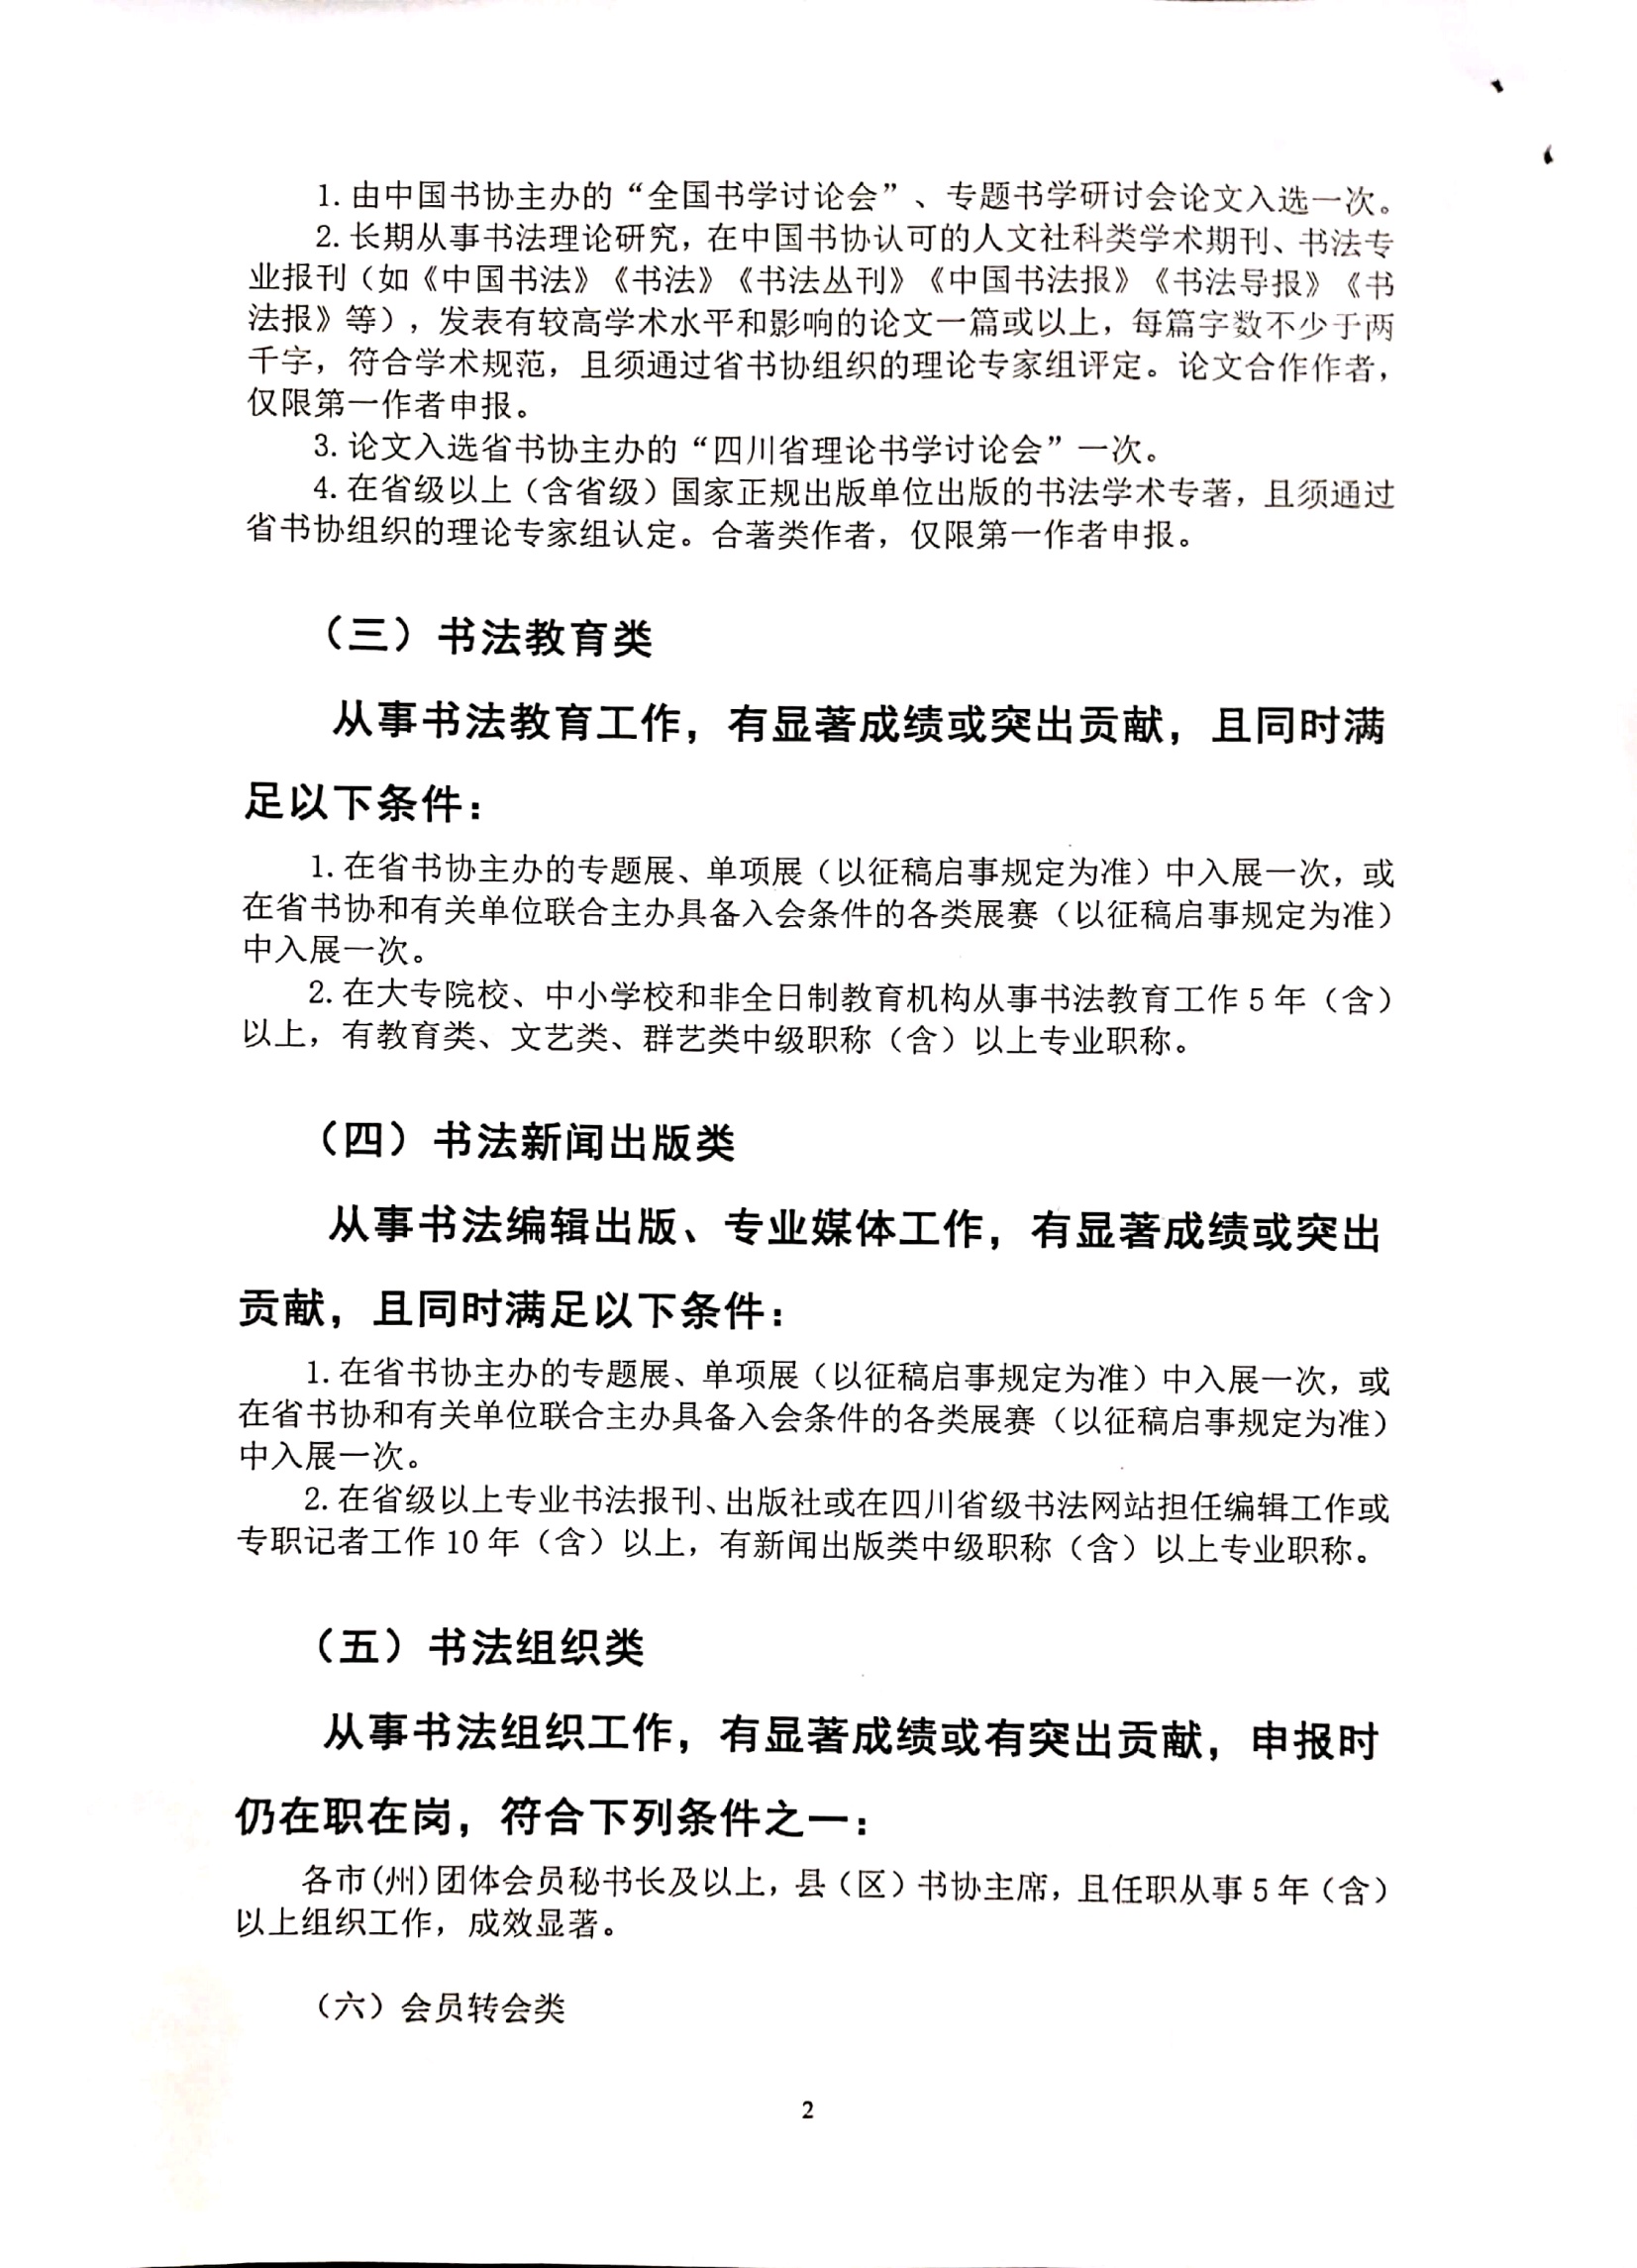 成都市书协关于2021年度中国书协、省书协会员申报工作的通知